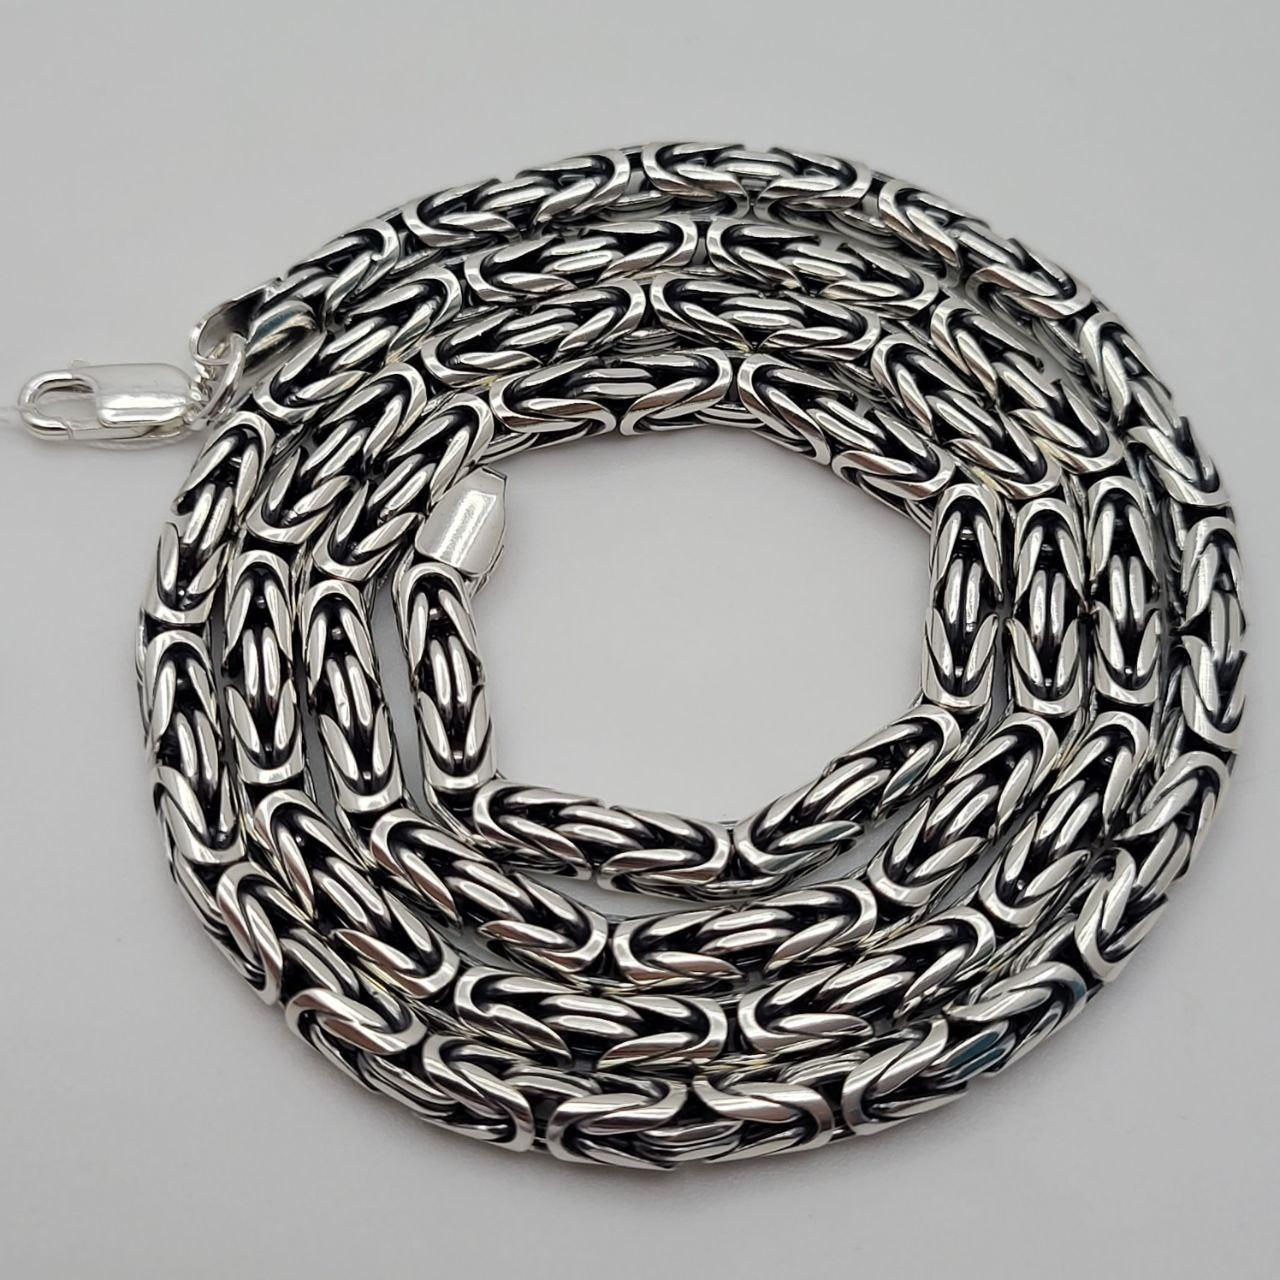 Срібний чоловічий ланцюжок на шию плетіння лисячий хвіст срібло чорнене 925 проби фабричне